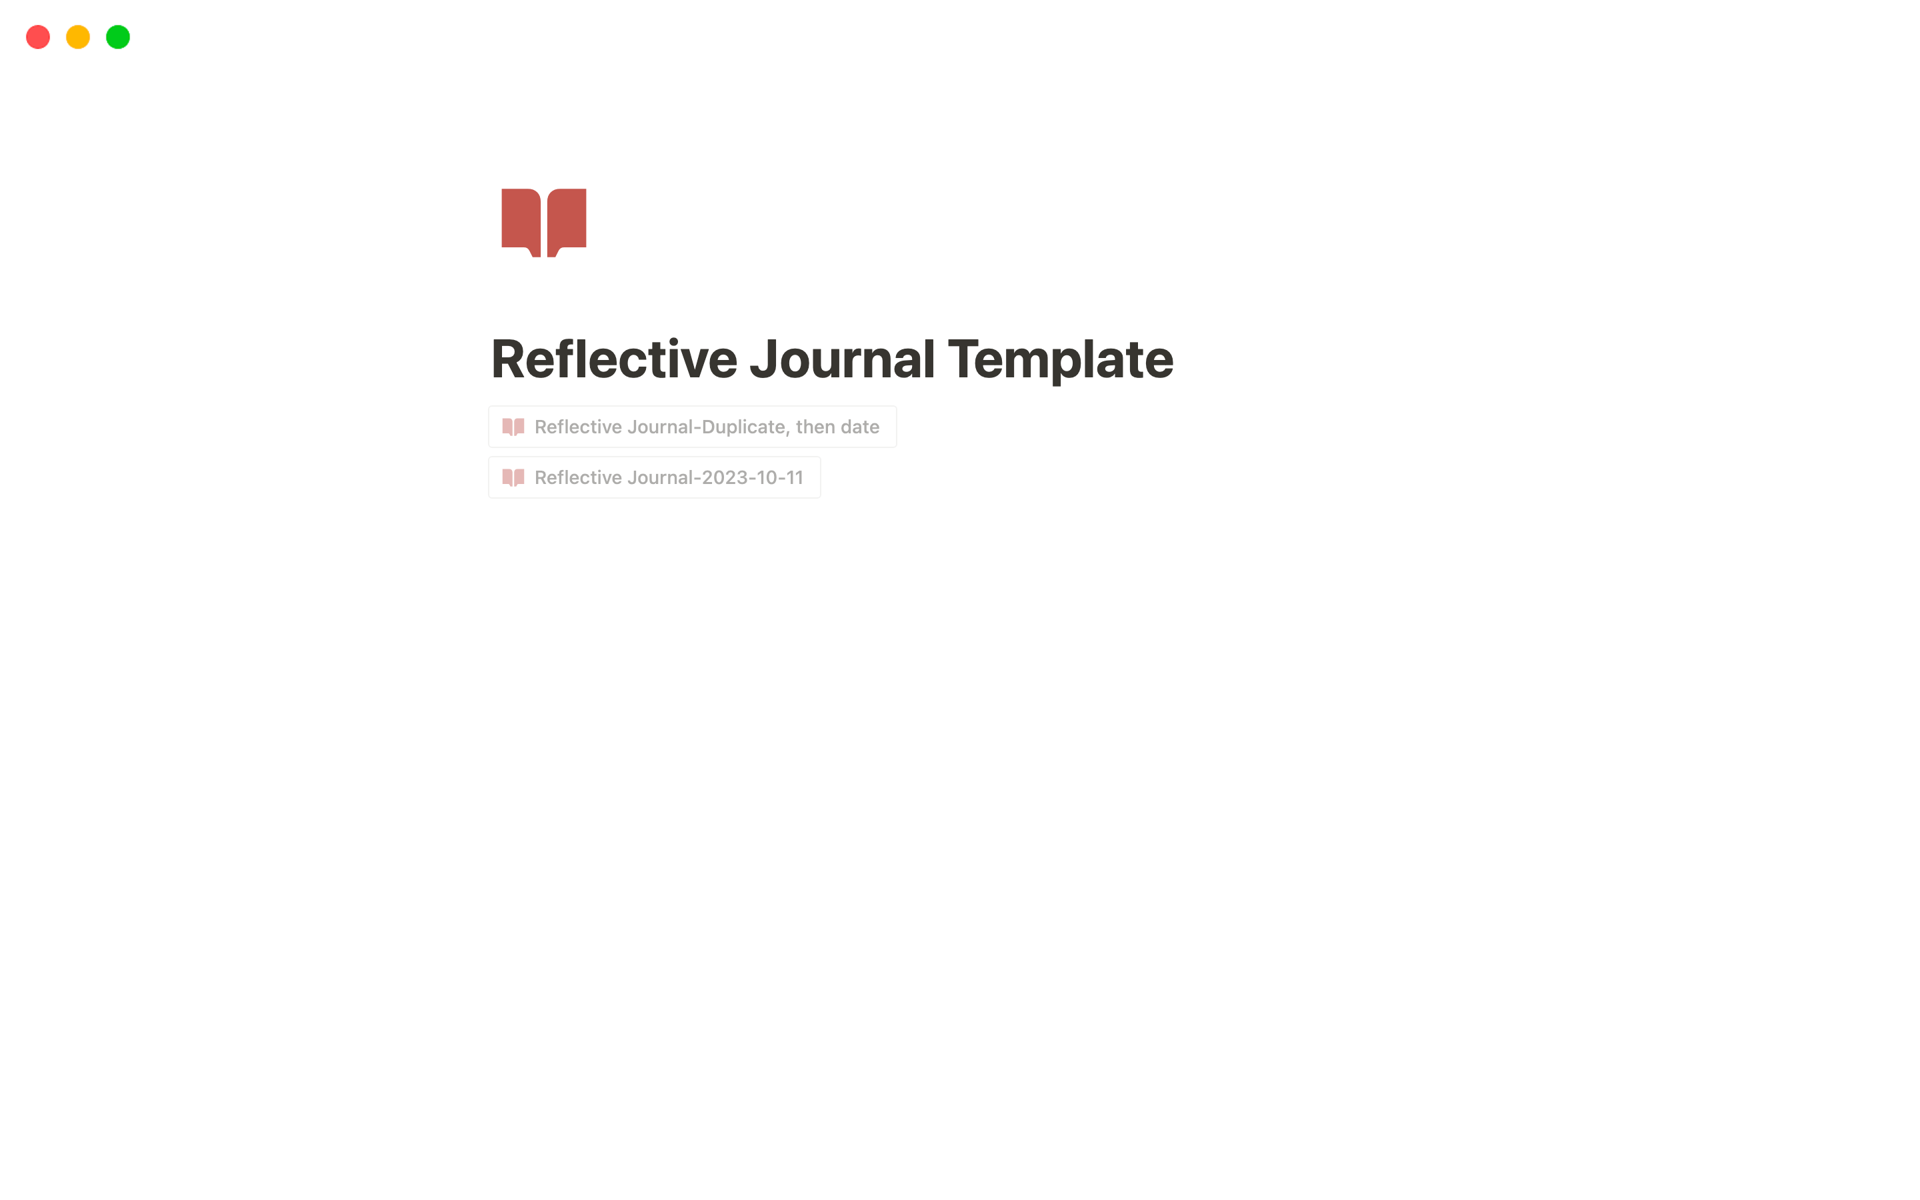 Uma prévia do modelo para Reflective Journal Template